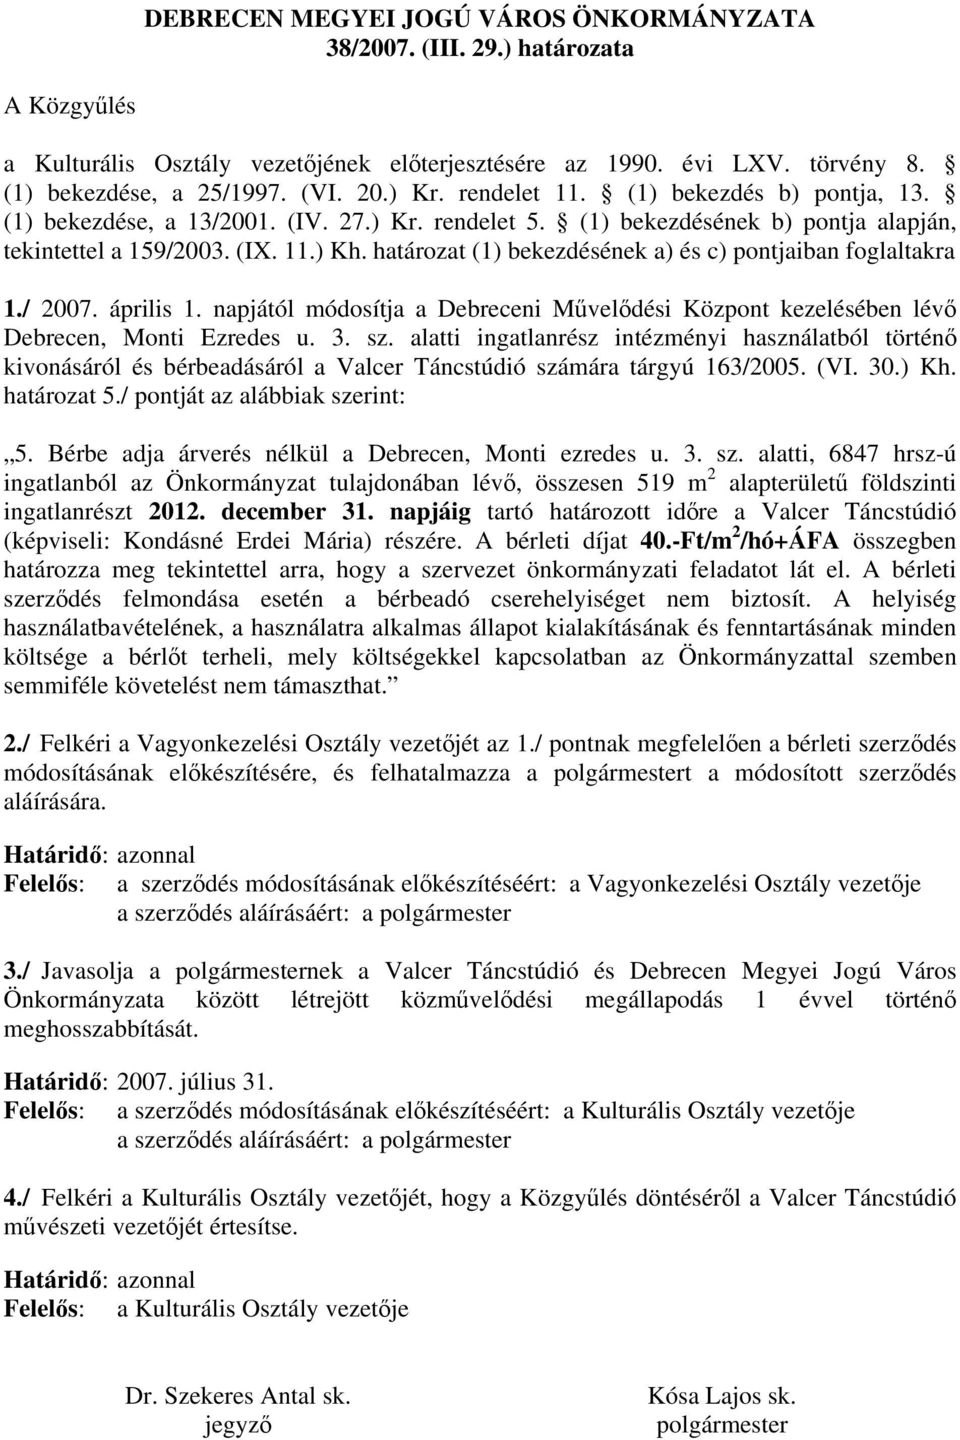 határozat (1) bekezdésének a) és c) pontjaiban foglaltakra 1./ 2007. április 1. napjától módosítja a Debreceni Művelődési Központ kezelésében lévő Debrecen, Monti Ezredes u. 3. sz.